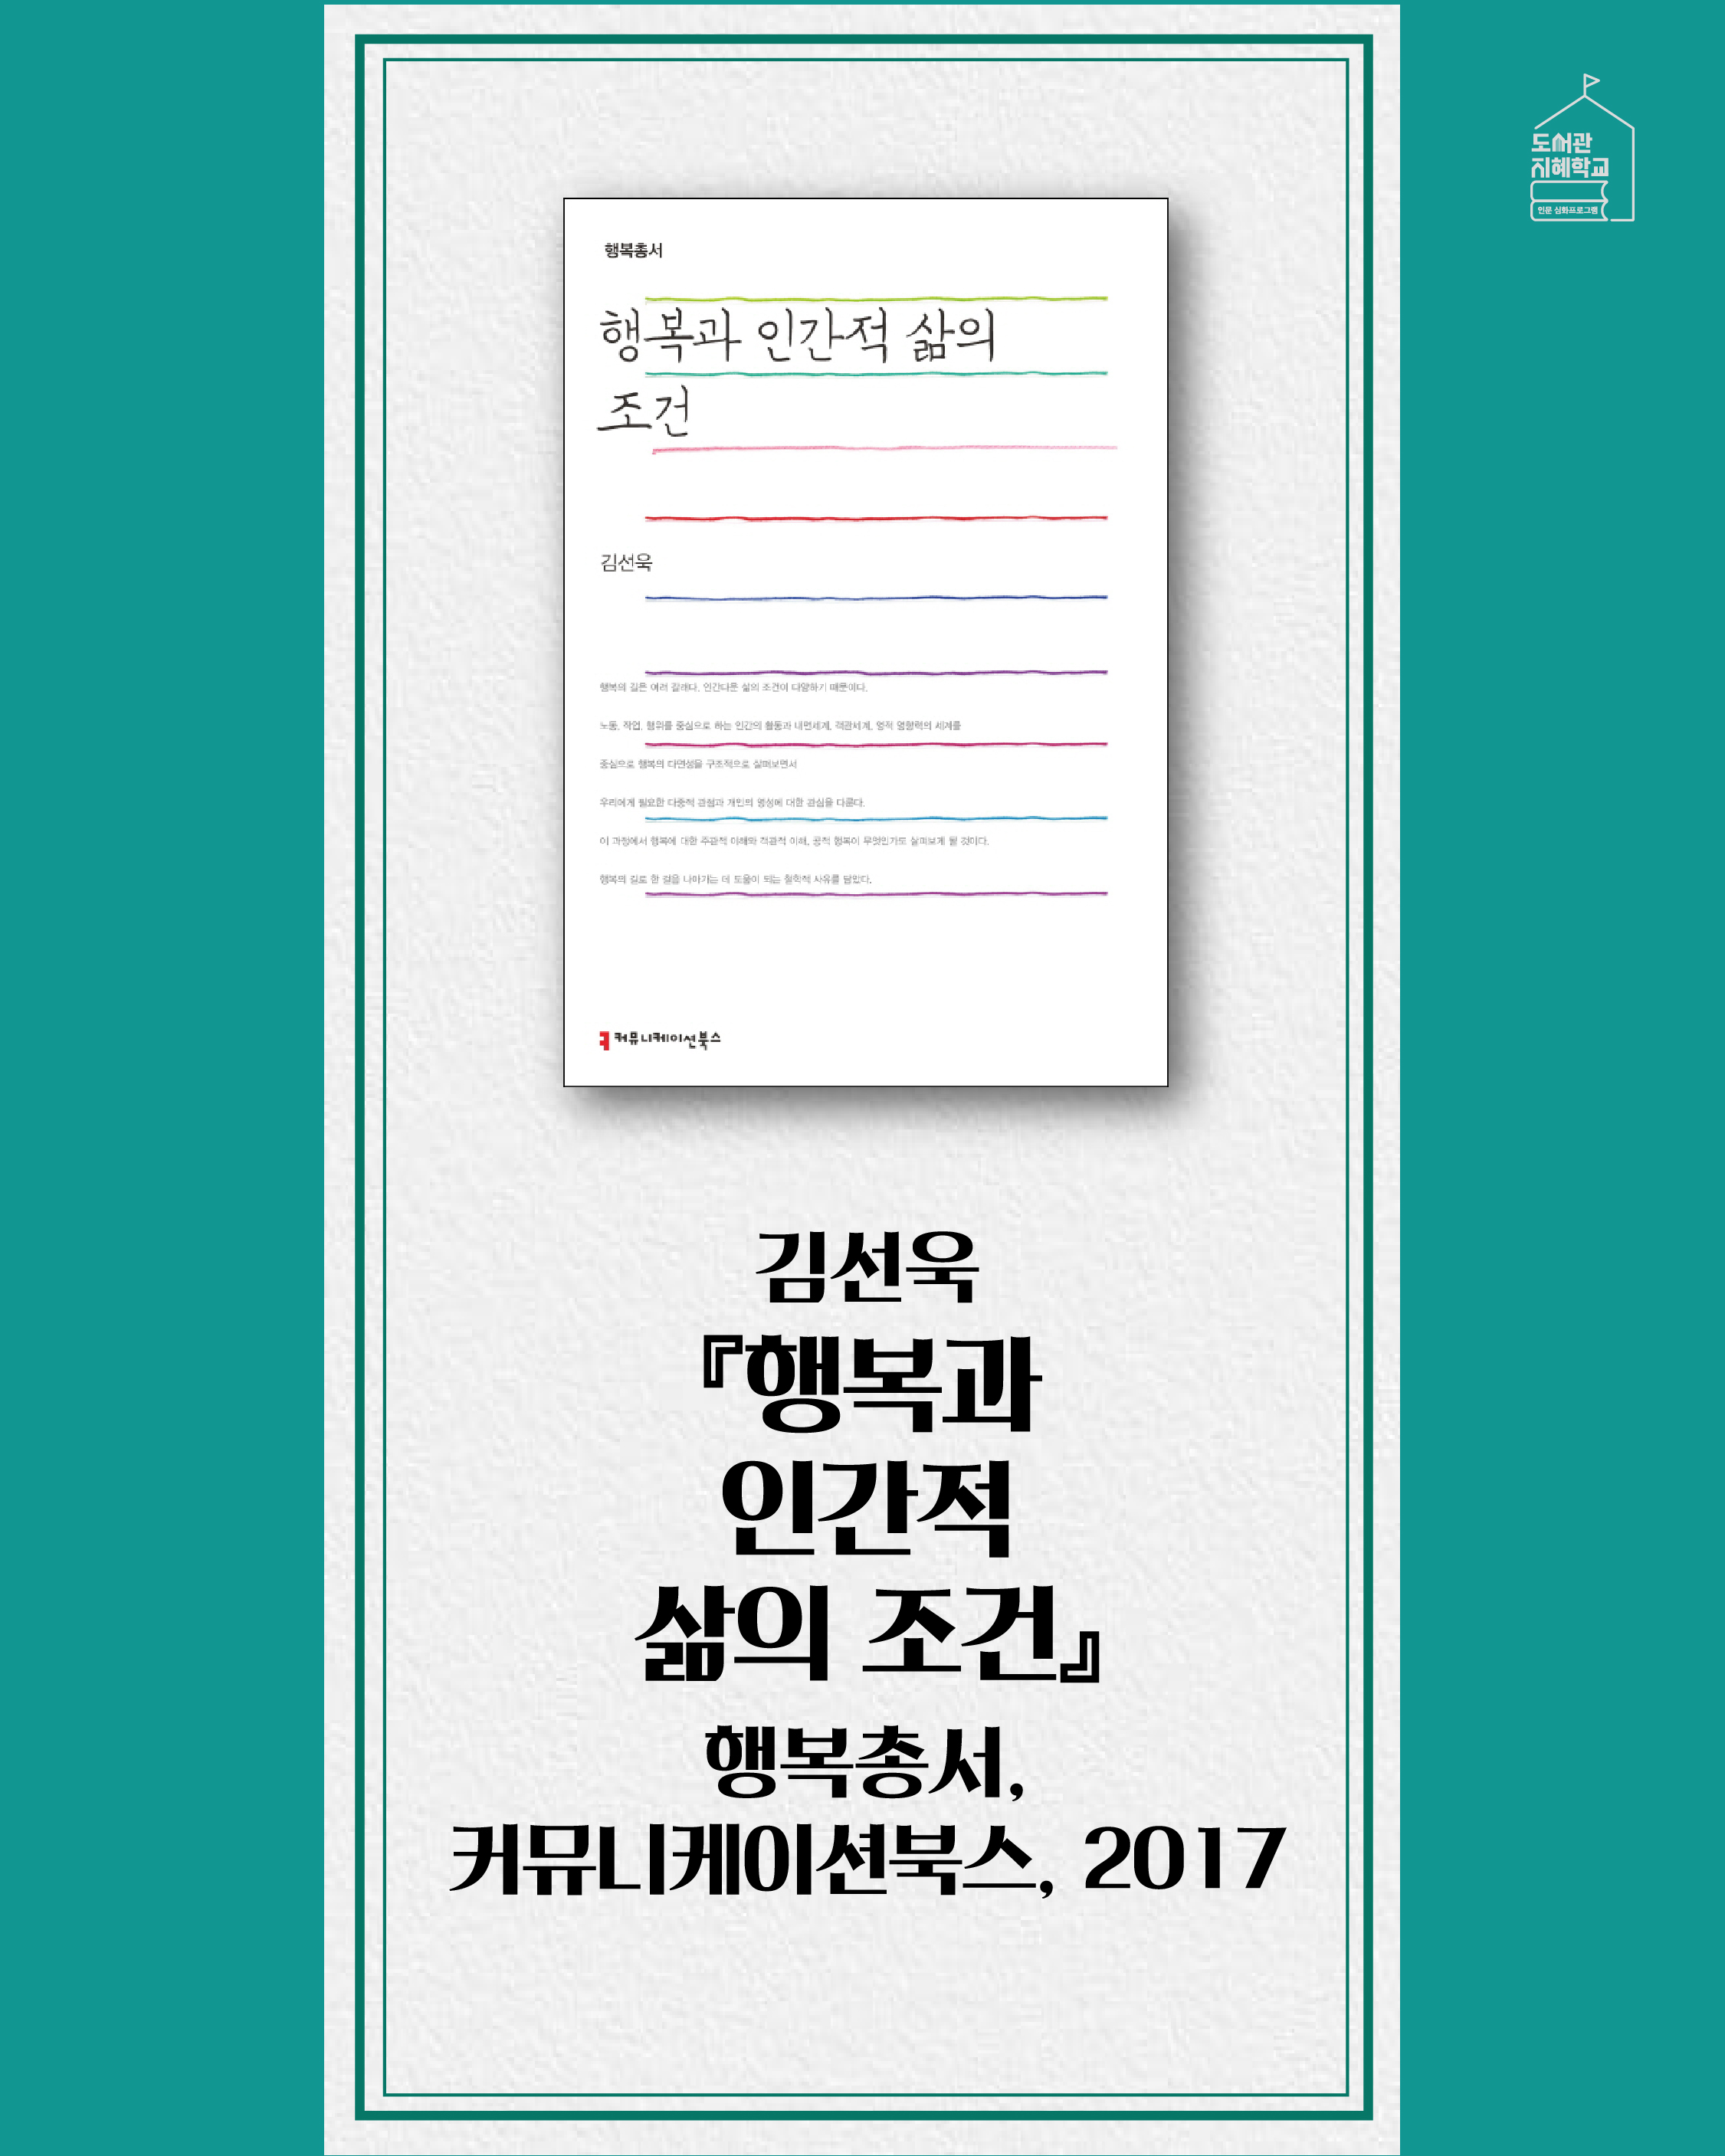 <행복과 인간적 삶의 조건> 김선욱, 행복총서, 커뮤니케이션북스, 2017